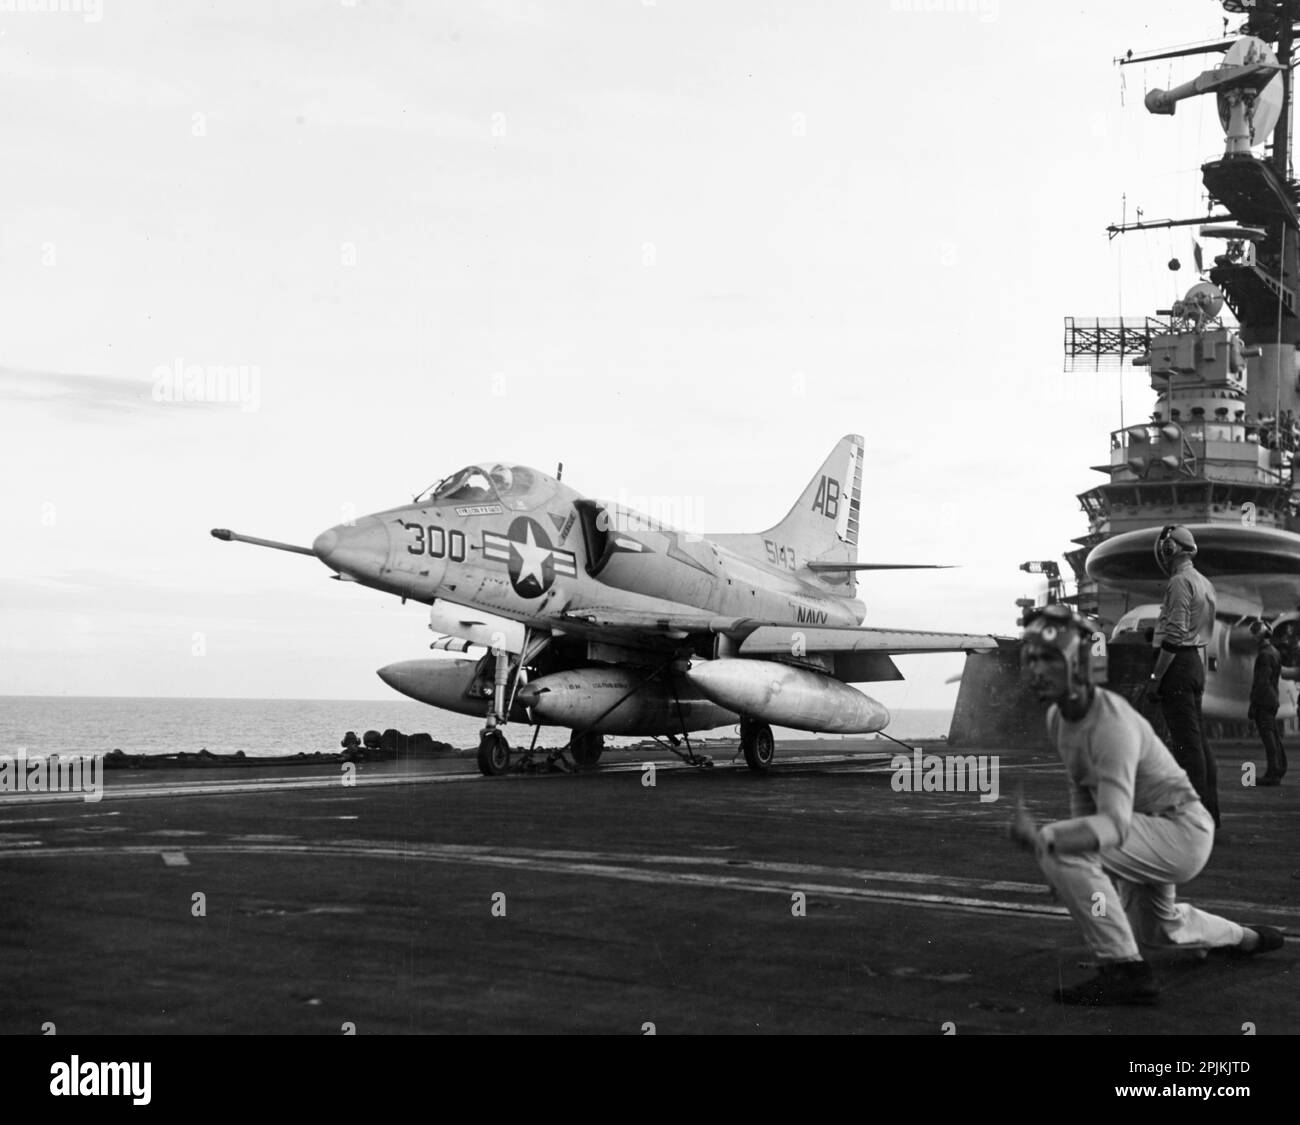 NEGLI STATI UNITI Navy Douglas A-4C Skyhawk (Buno 145143) di Attack Squadron 172 (VA-172) 'Blue Bolts' si prepara a lasciare il ponte di volo della portaerei USS Franklin D. Roosevelt (CVA-42), 10 agosto 1966. Va-172 è stato assegnato ad attaccare la Carrier Air Wing 1 (CVW-1) a bordo del Franklin D. Roosevelt per un dispiegamento in Vietnam dal 21 giugno 1966 al 21 febbraio 1967. Questo aeromobile è stato perso il 2 dicembre 1966, quando è stato abbattuto da un missile nordvietnamita SA-2 durante una missione di ricognizione notturna sul delta del fiume Rosso, a sud di Hanoi, Vietnam. Il pilota, il comandante Bruce A. Nystrom, co del VA-172 Foto Stock